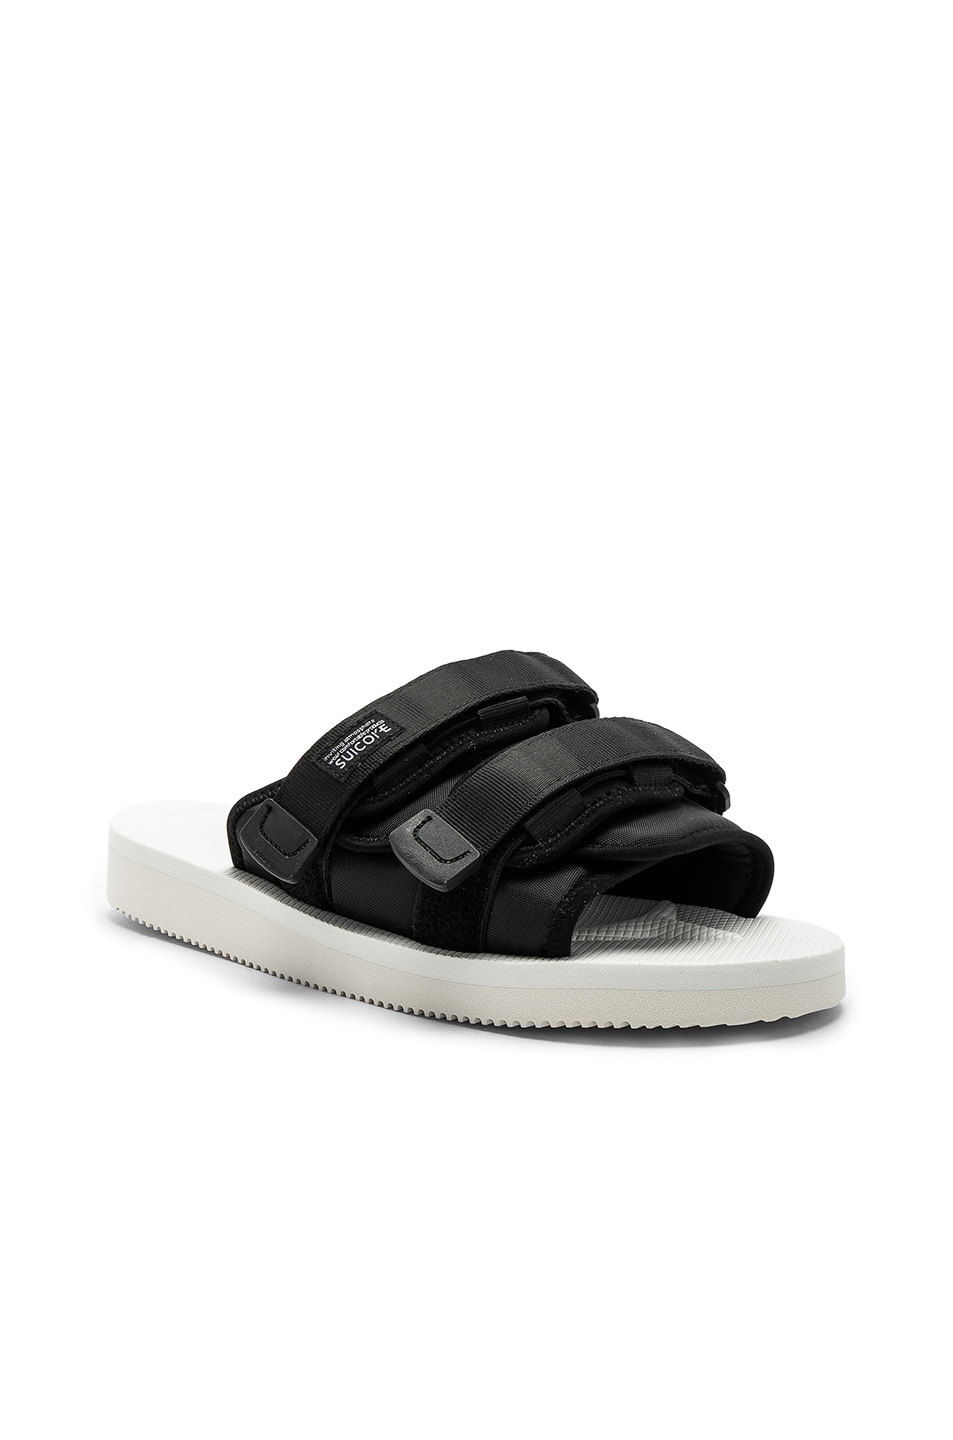 Image 1 of JOHN ELLIOTT x Suicoke Sandals in White & Black